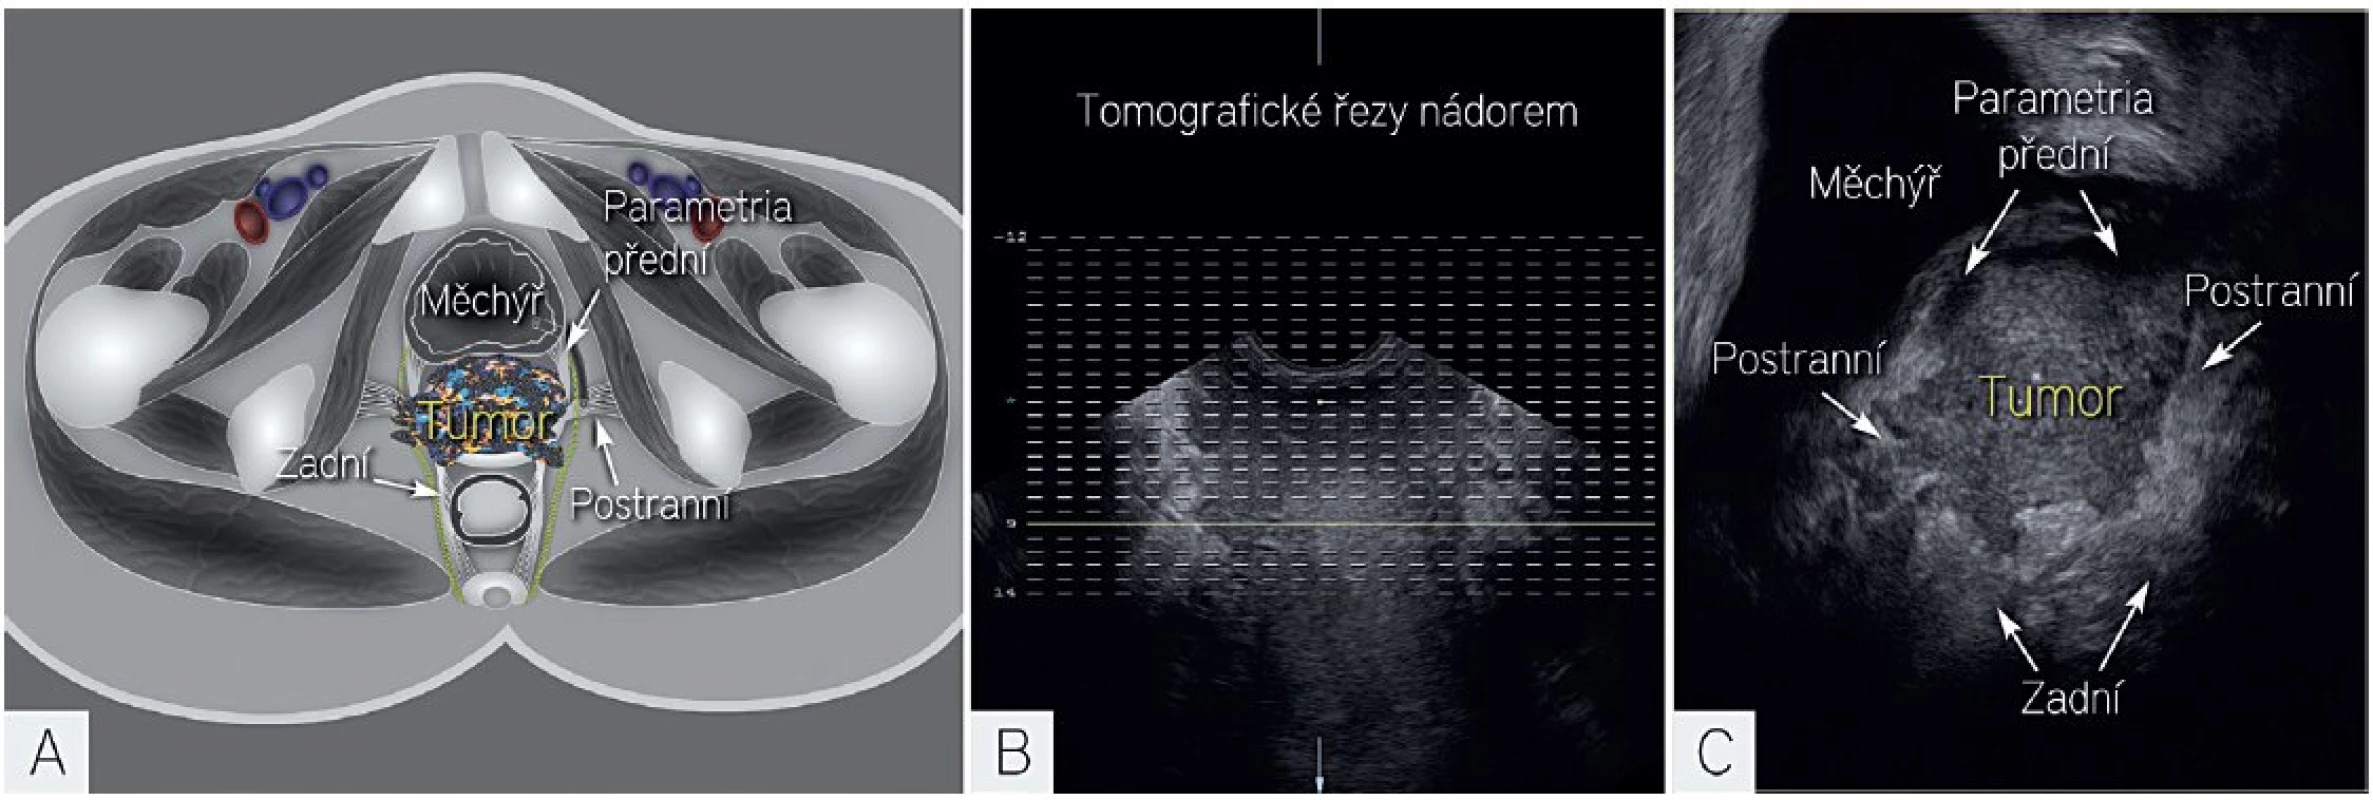 Tomografické řezy v 3D ultrazvuku